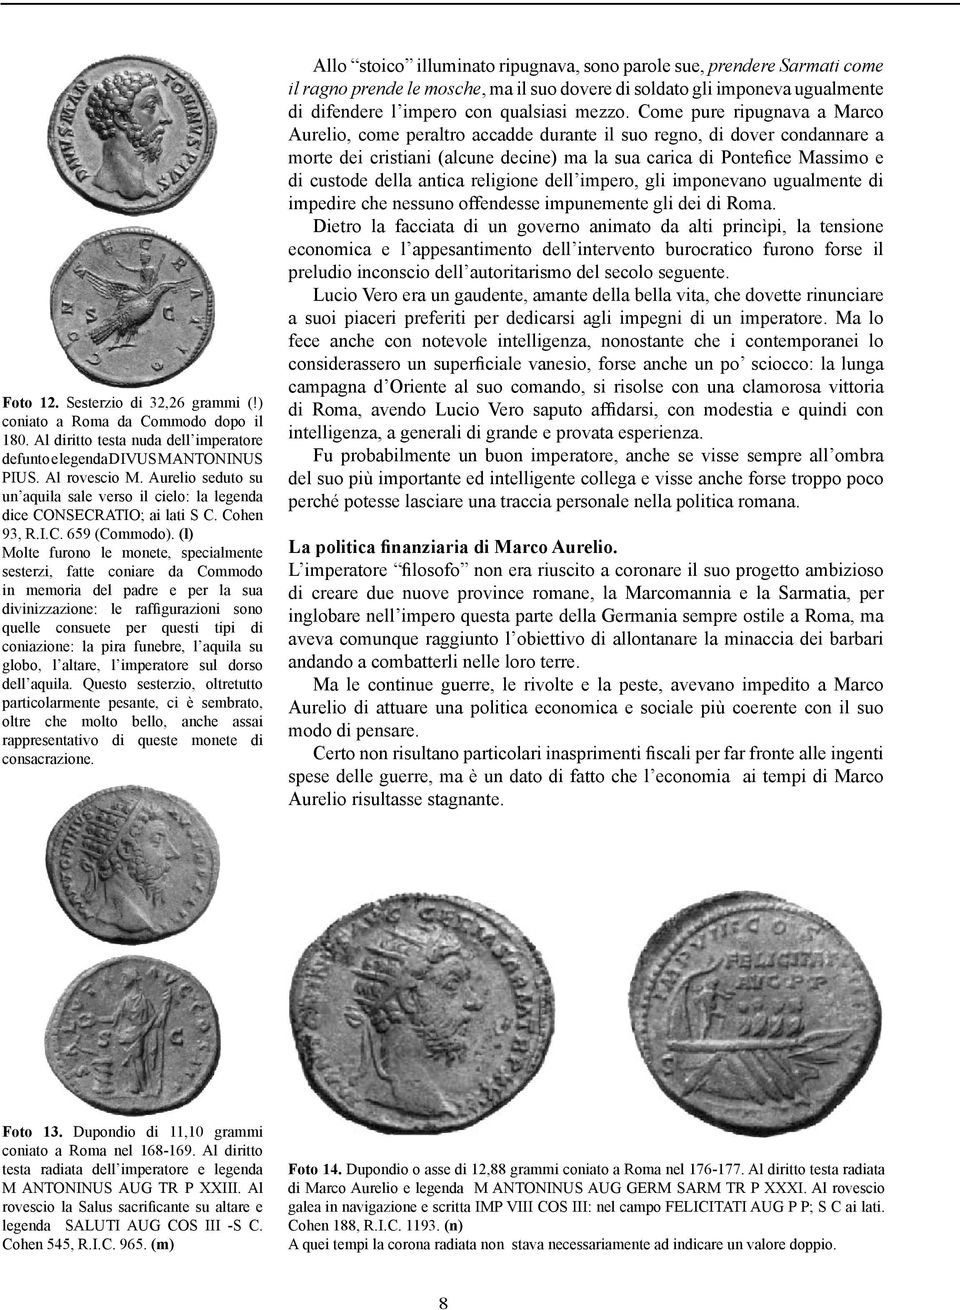 (l) Molte furono le monete, specialmente sesterzi, fatte coniare da Commodo in memoria del padre e per la sua divinizzazione: le raffigurazioni sono quelle consuete per questi tipi di coniazione: la